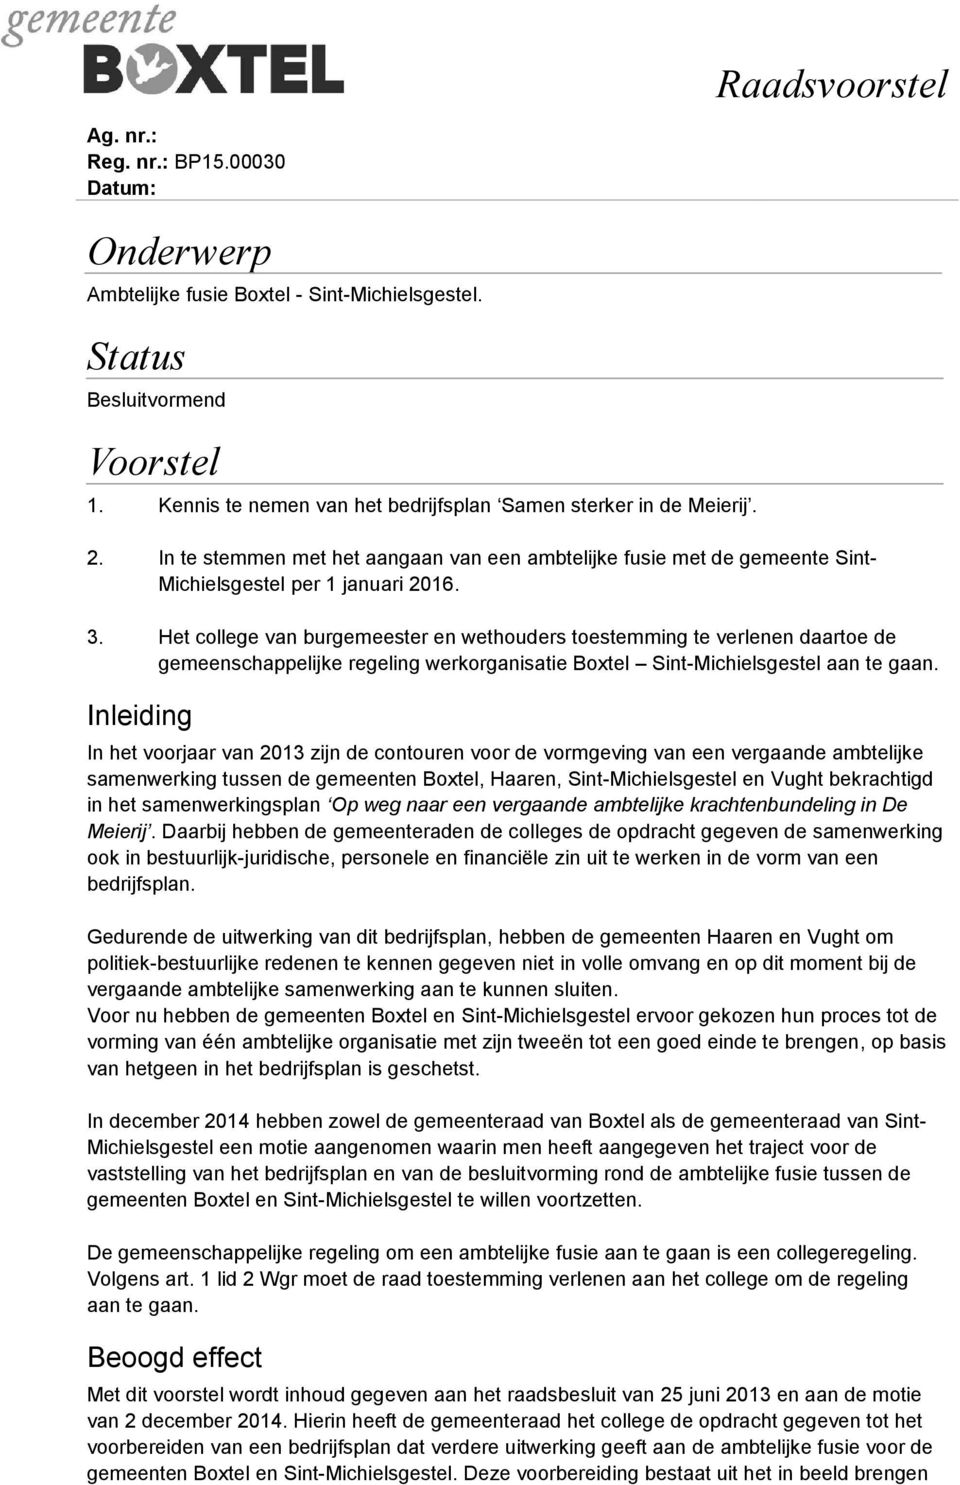 Het college van burgemeester en wethouders toestemming te verlenen daartoe de gemeenschappelijke regeling werkorganisatie Boxtel Sint-Michielsgestel aan te gaan.